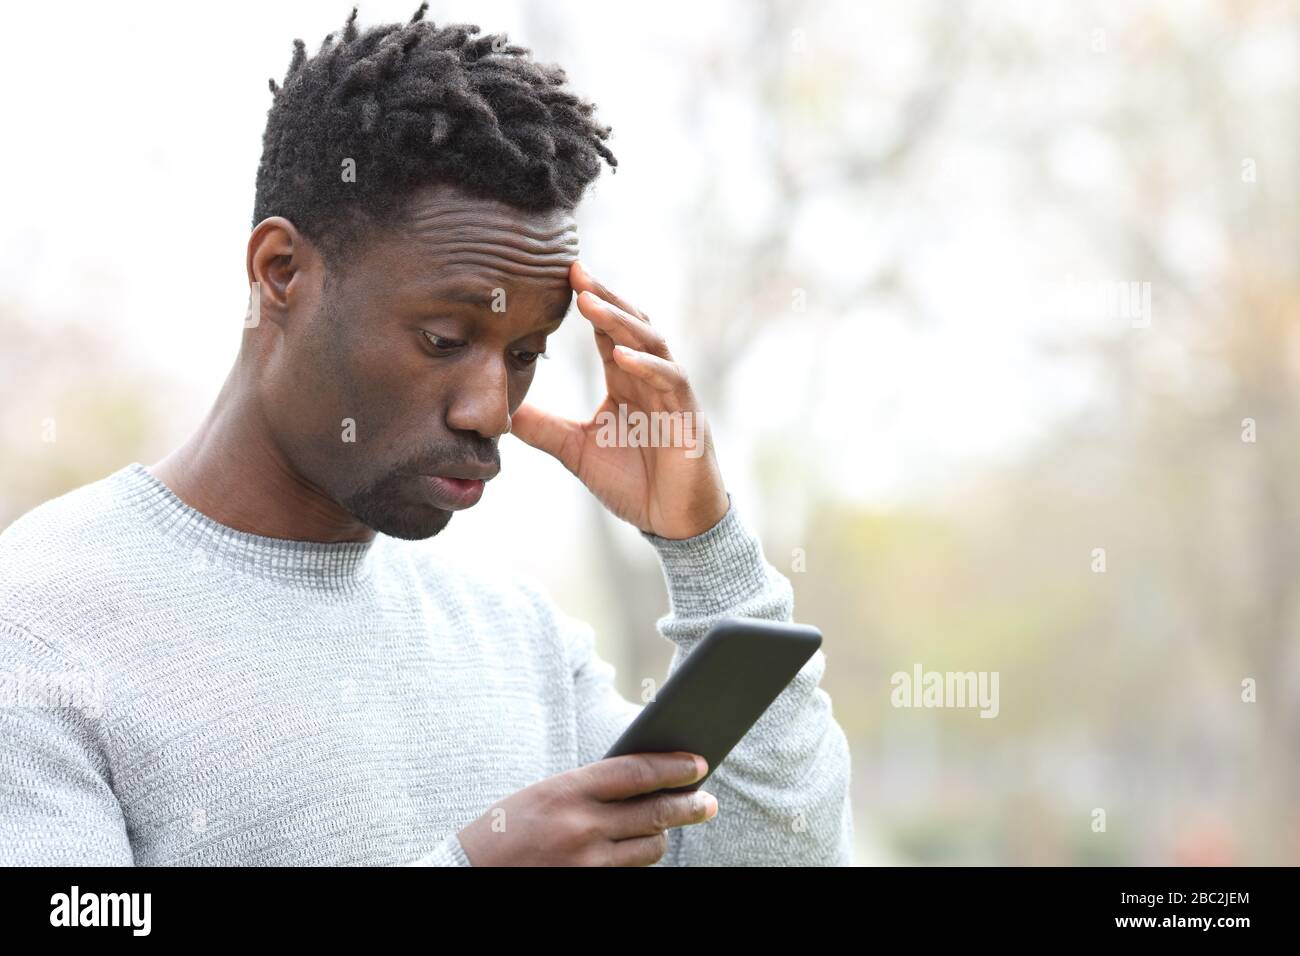 L'uomo nero si lamenta dopo aver commesso un errore su uno smartphone in piedi in un parco Foto Stock